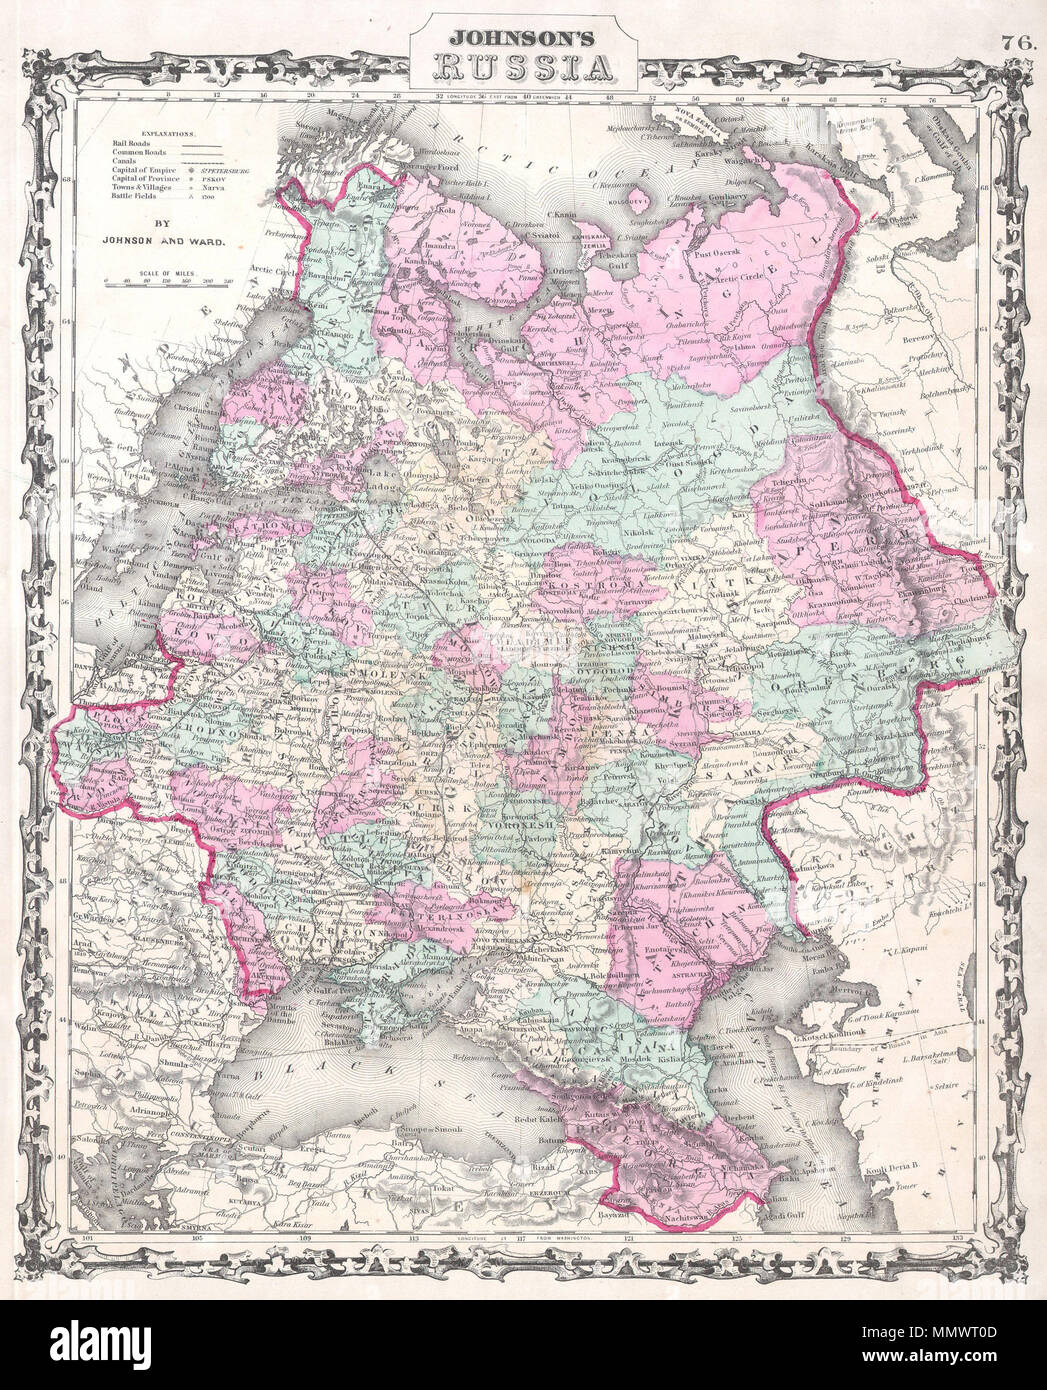 . Anglais : un bel exemple de Johnson et Ward's 1862 Carte de la Russie. L'illustre certaines parties de la Russie du sud de l'océan Arctique à la mer Noire et mer Caspienne. S'étend à l'ouest jusqu'à Varsovie et à l'est jusqu'à Orenbourg et de Perm. Comprend l'Ukraine. Entouré par la belle frontière ruban commune à Johnson's Atlas entre 1860 et 1862. L'un des plus attrayant American cartes de l'atlas de la Russie d'apparaître dans le milieu du 19ème siècle. Basé sur la carte 1855 Colton de la même région. Préparé par A. J. pour l'inclusion comme dans la plaque 76 1862 Question de Johnson dans les Atl illustré Banque D'Images